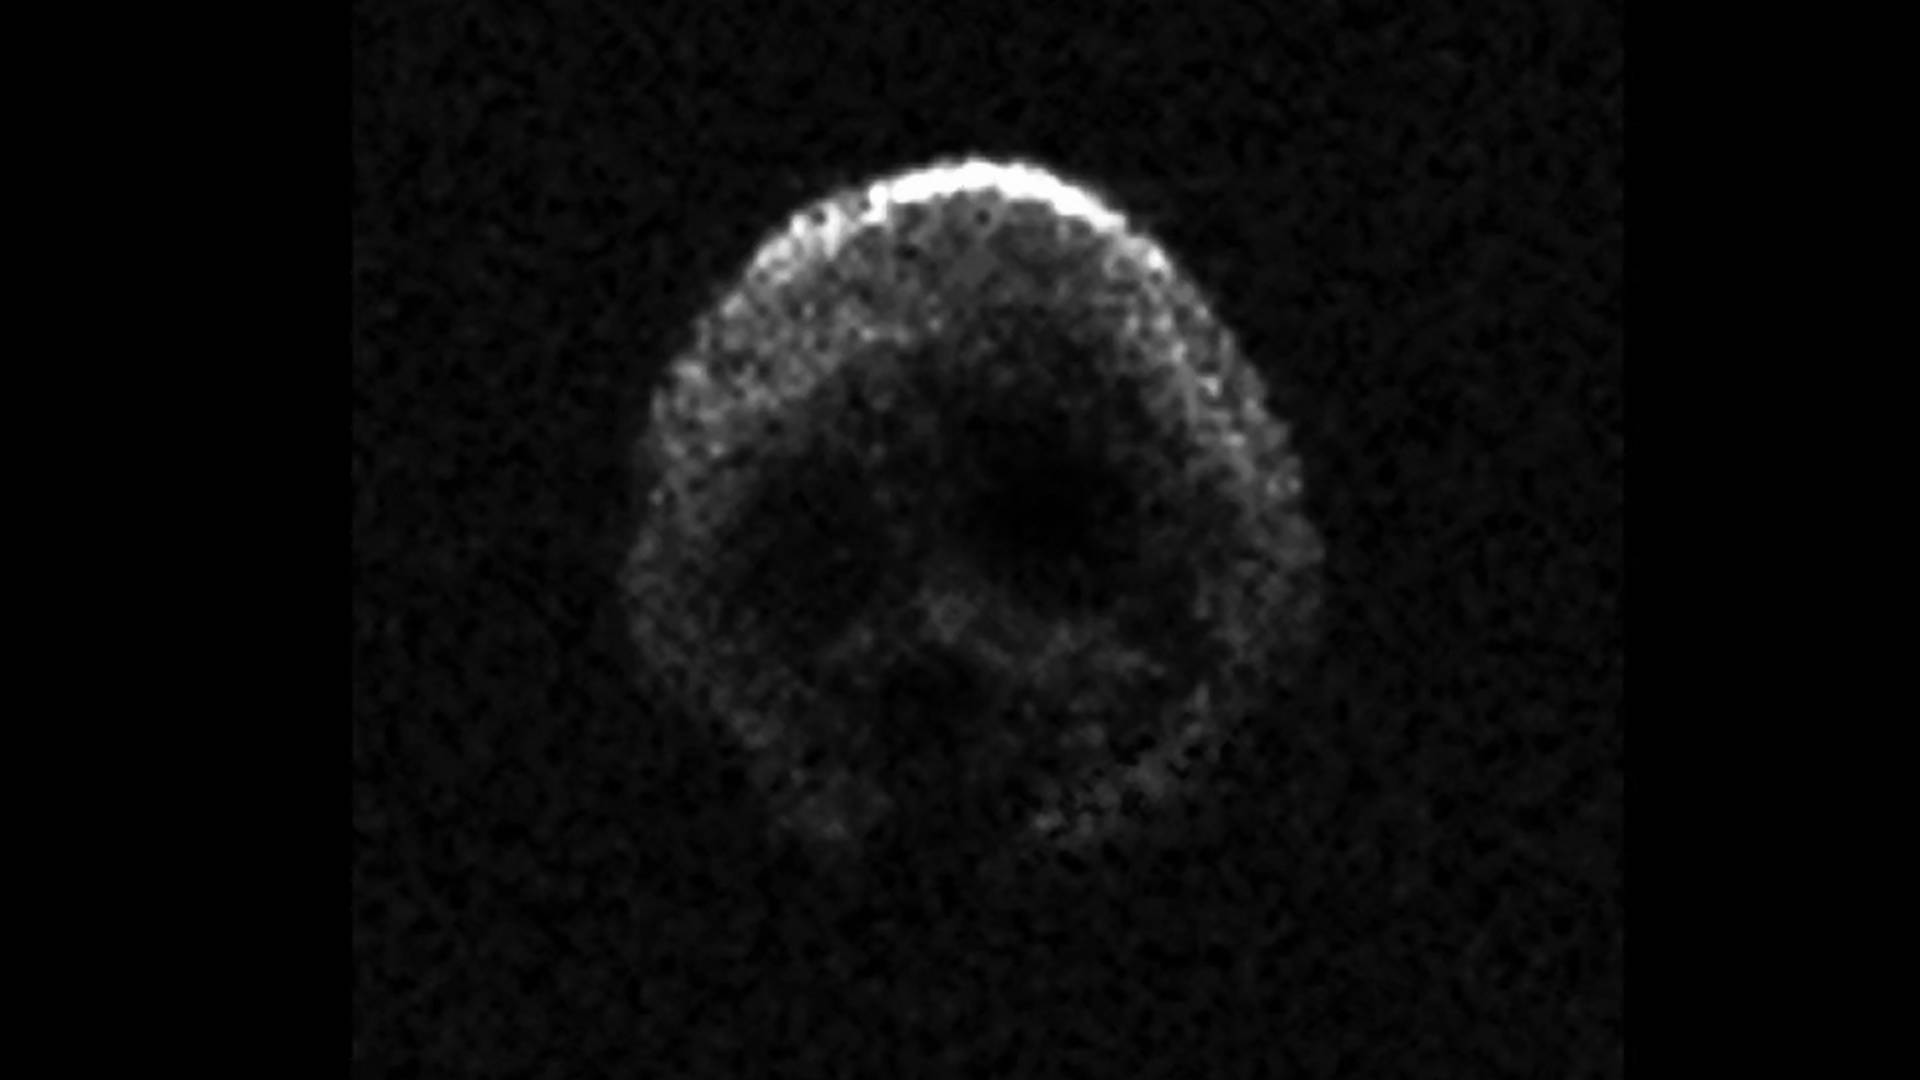 Kometa w kształcie czaszki minie Ziemię w setną rocznicę Święta Niepodległości